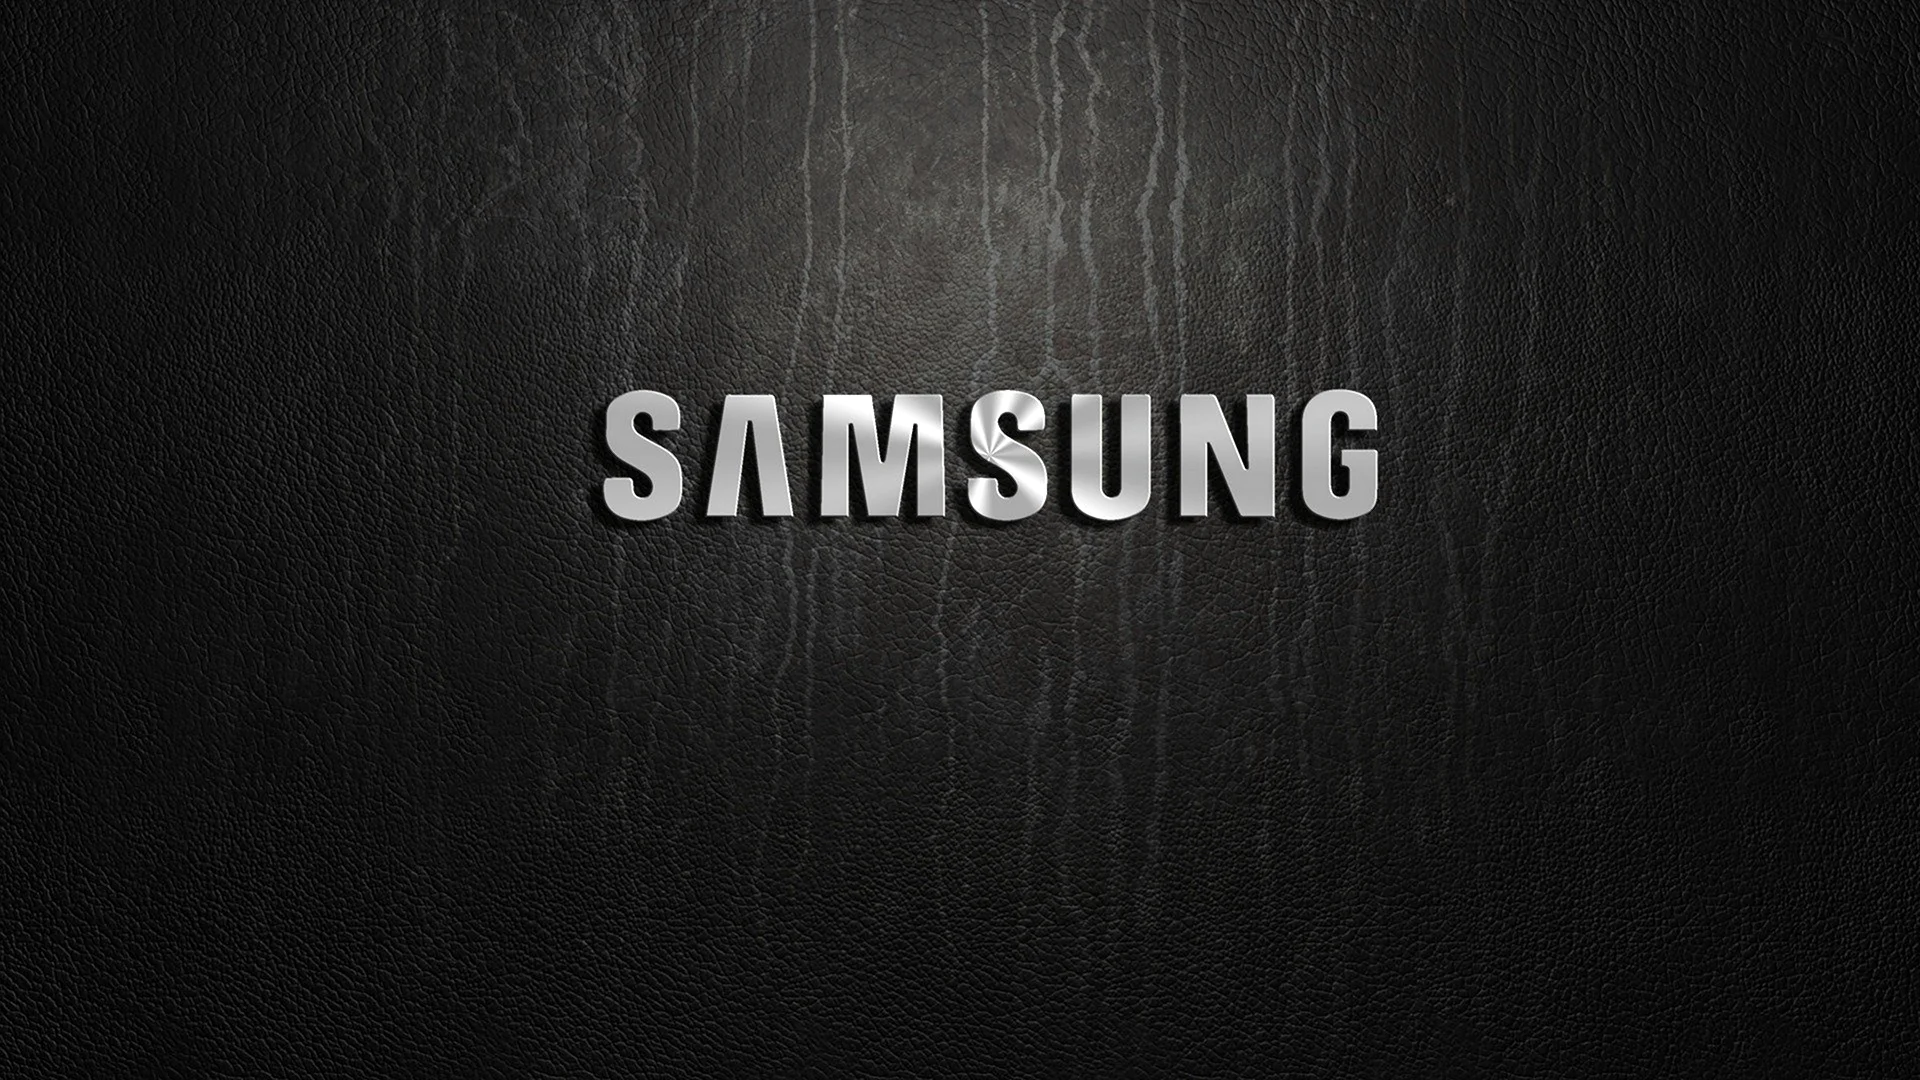 Логотип Samsung Galaxy Note 8